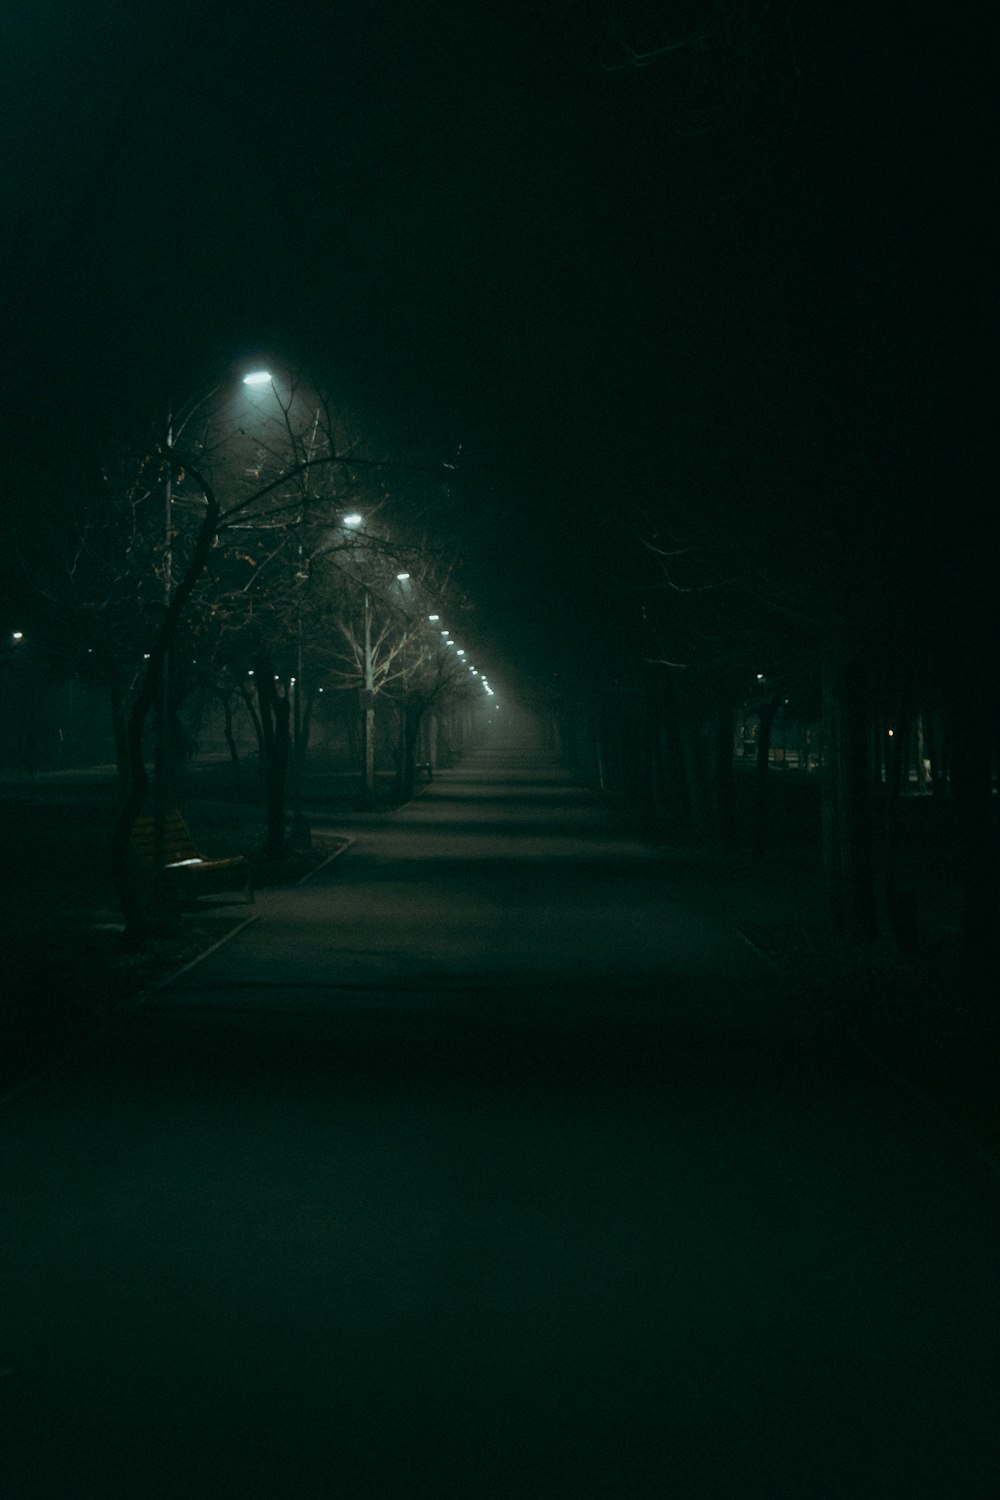 Una strada buia di notte con lampioni